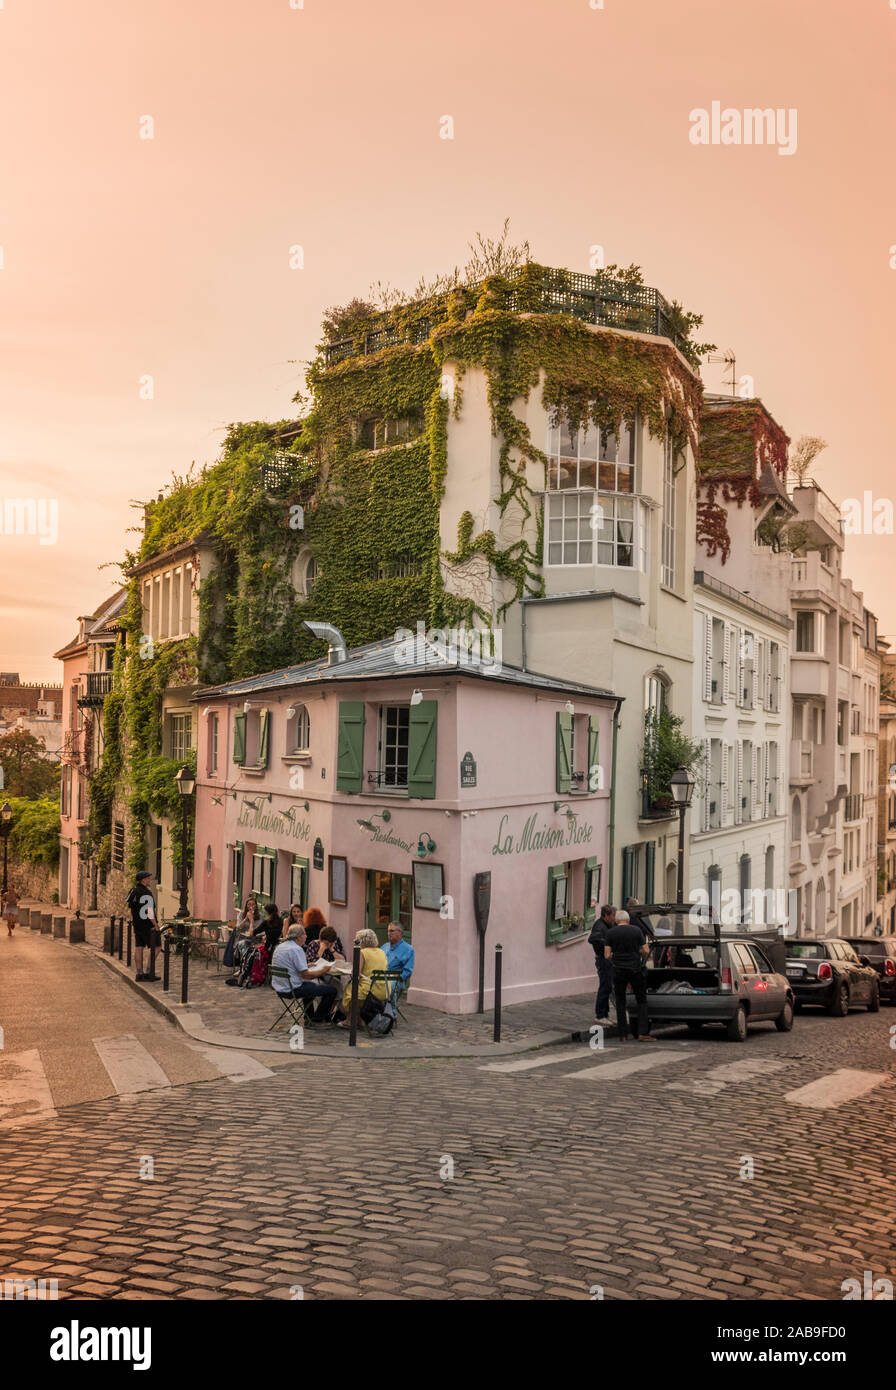 Die berühmte Rue de l'Abreuvoir mit dem rosafarbenen Restaurant La Maison Rose in Paris, Frankreich Stockfoto